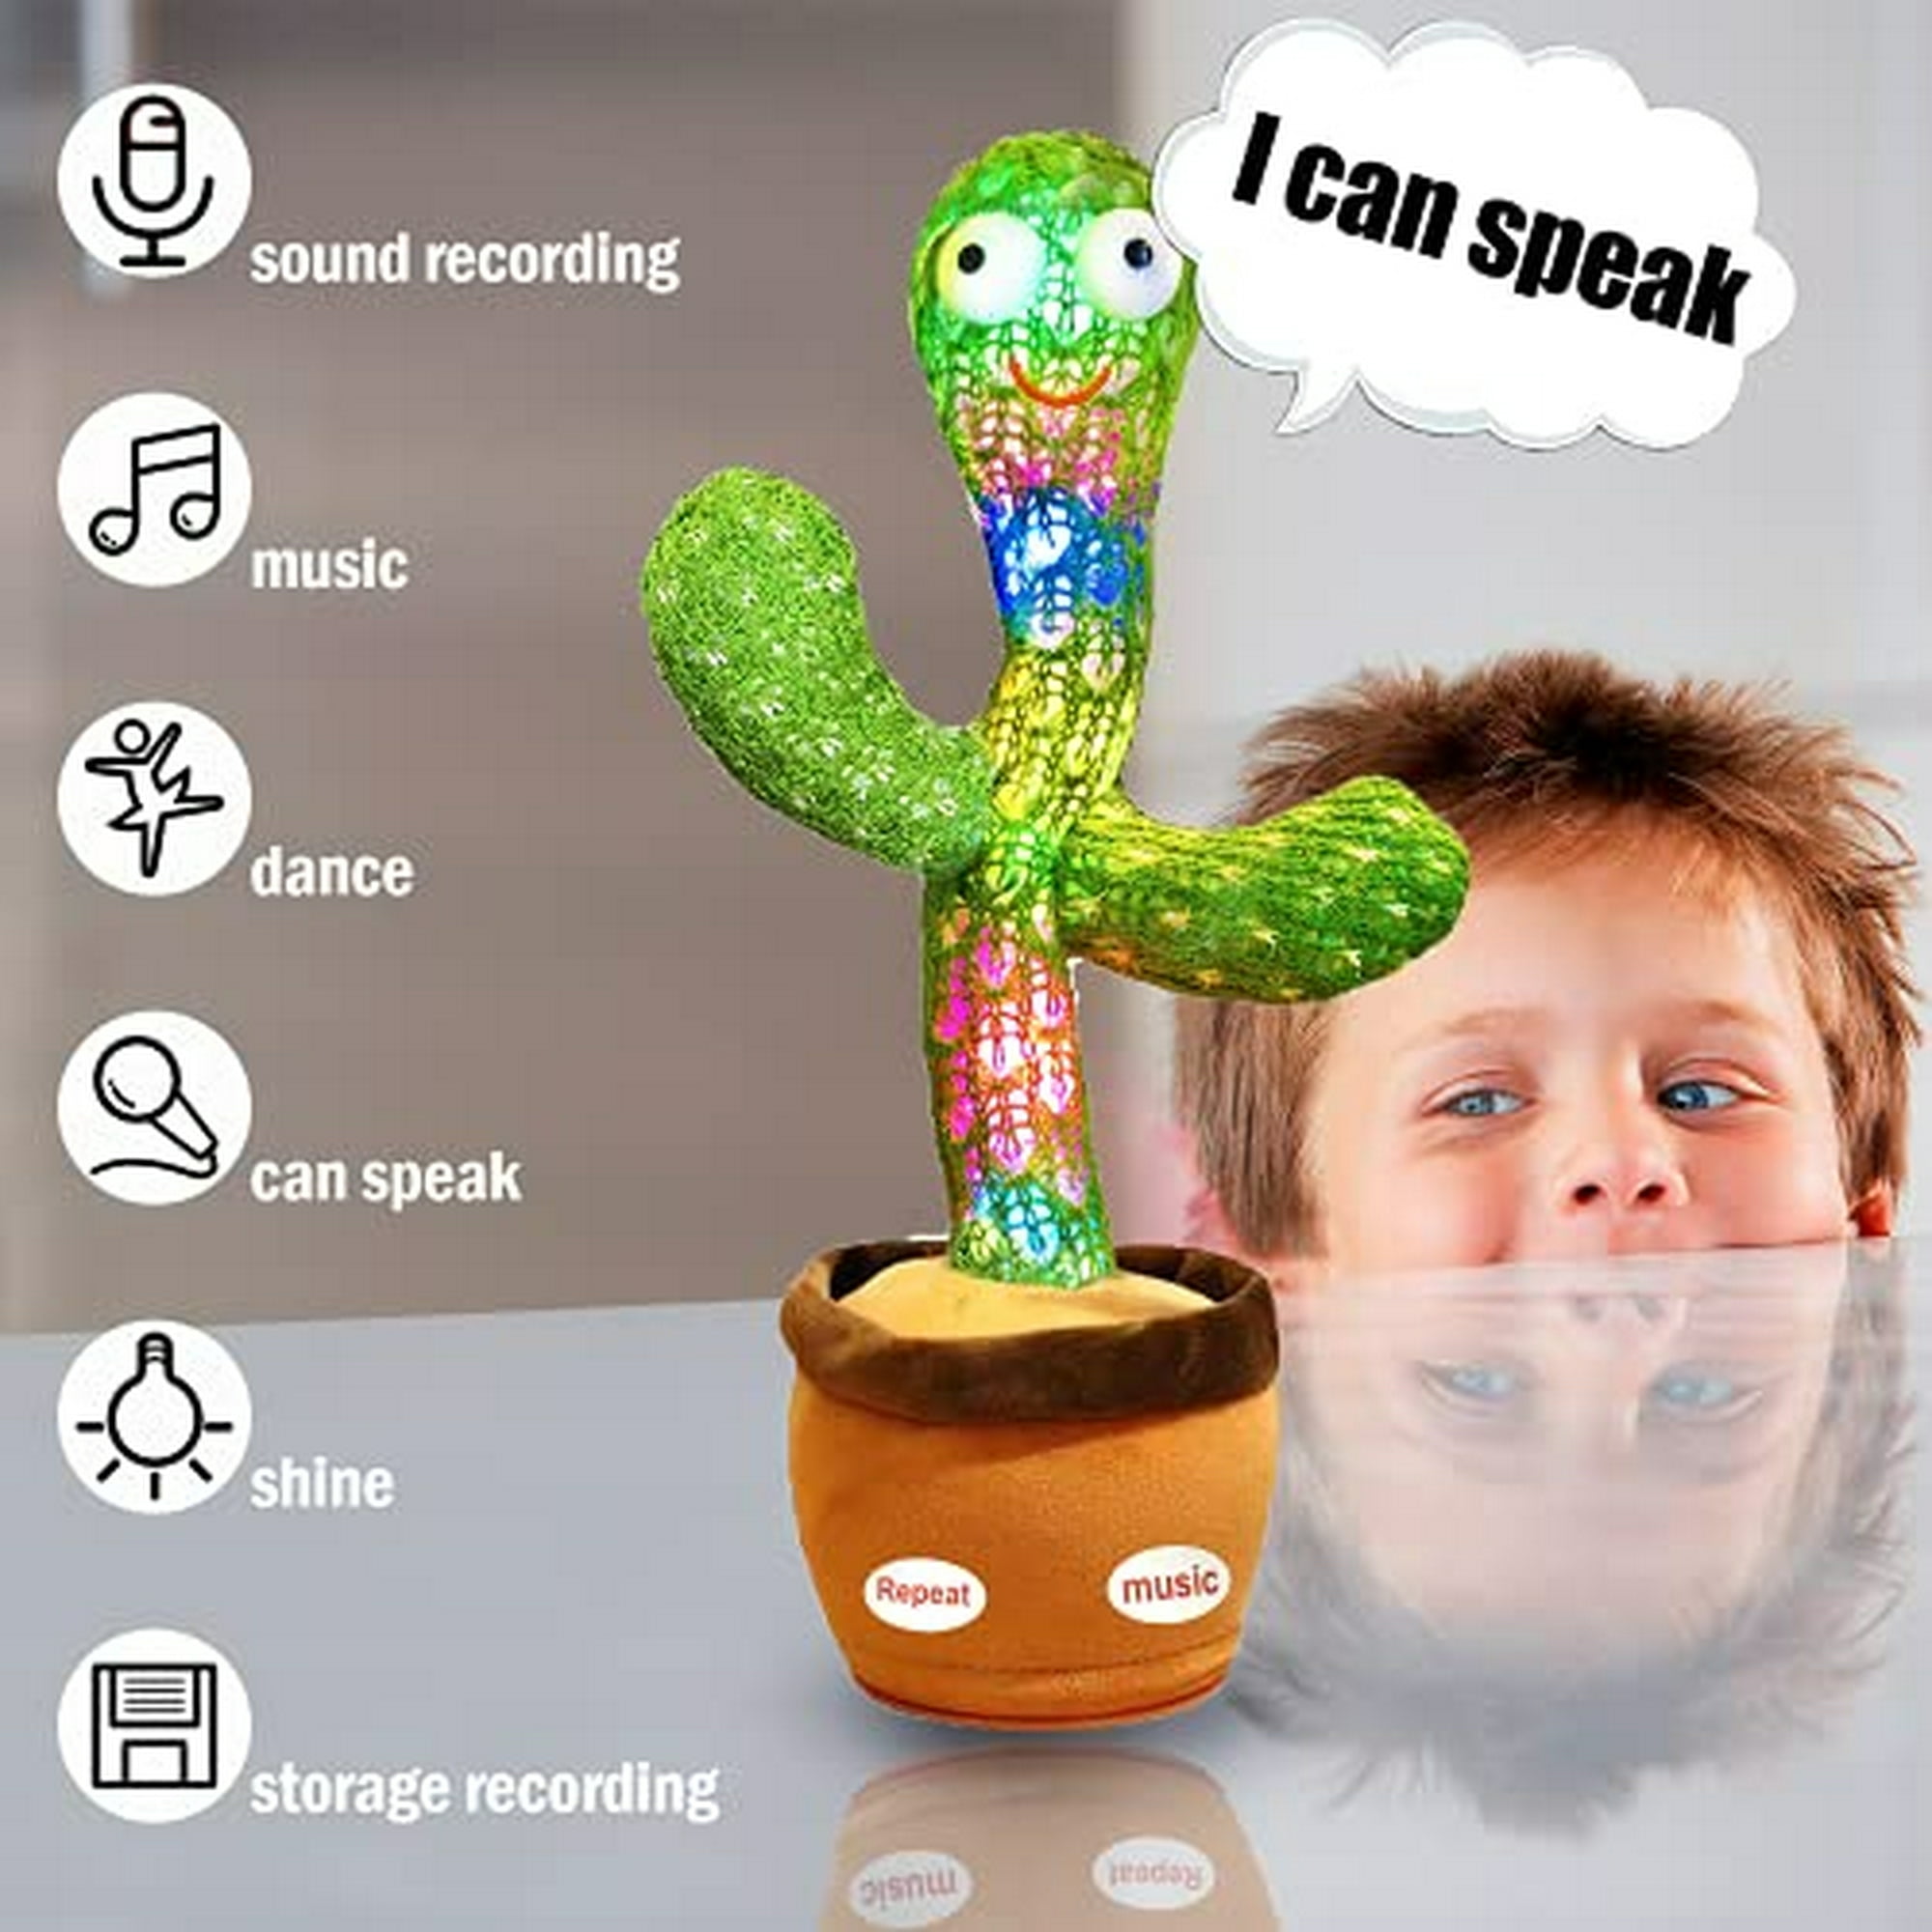 Juguete de cactus bailando Pbooo, que habla, repite, canta, Sunny